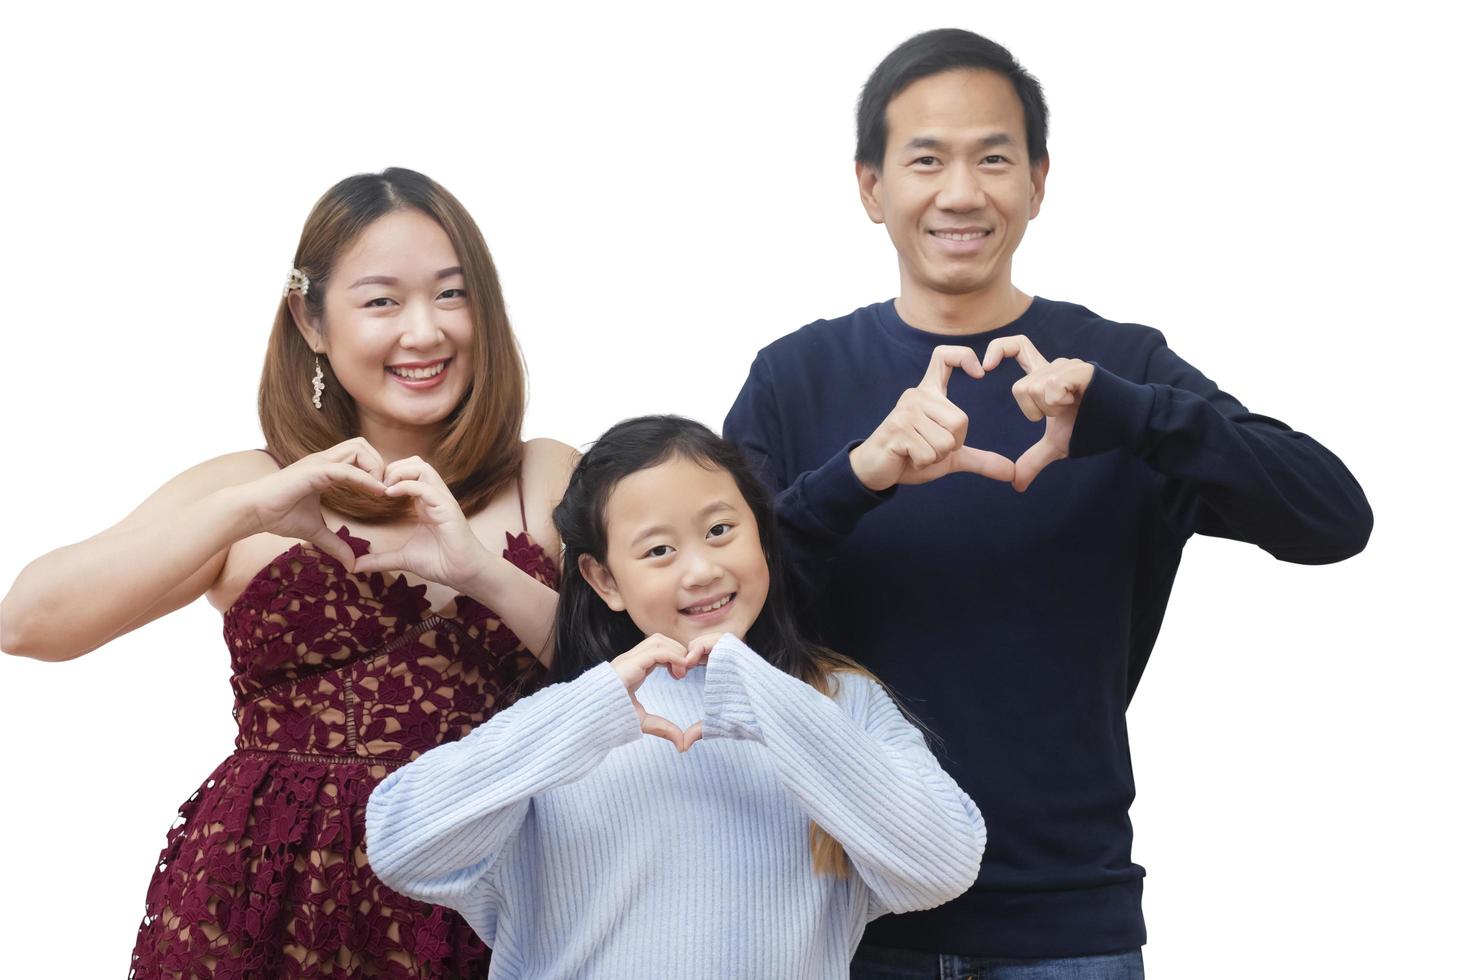 femme de famille asiatique et un homme avec une petite femme junior souriante et amusante isolée sur fond blanc photo